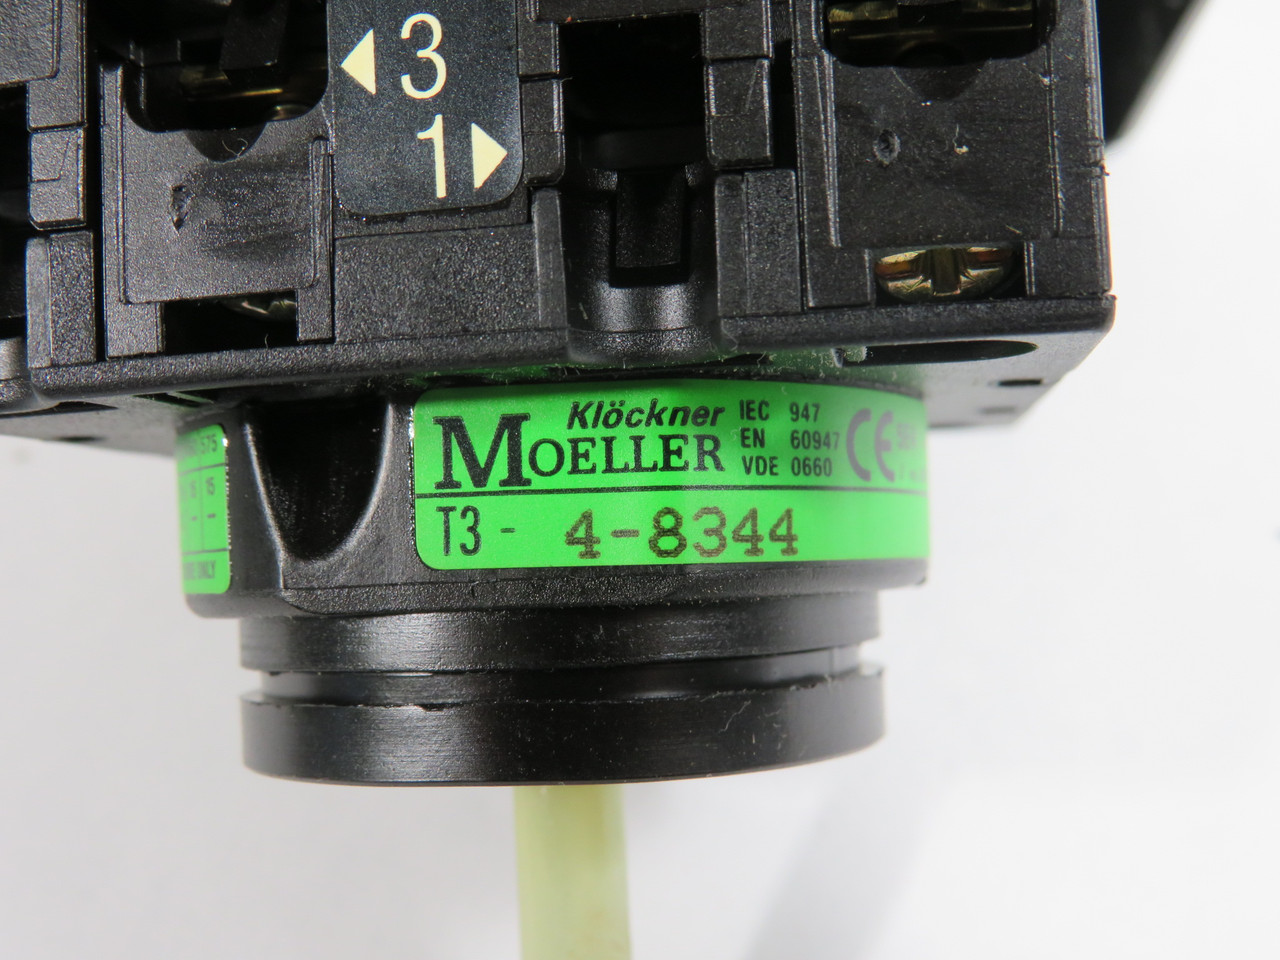 Klockner-Moeller T3-4-8344/I/SVB-SW Main Switch + Housing MISSING HARDWARE USED